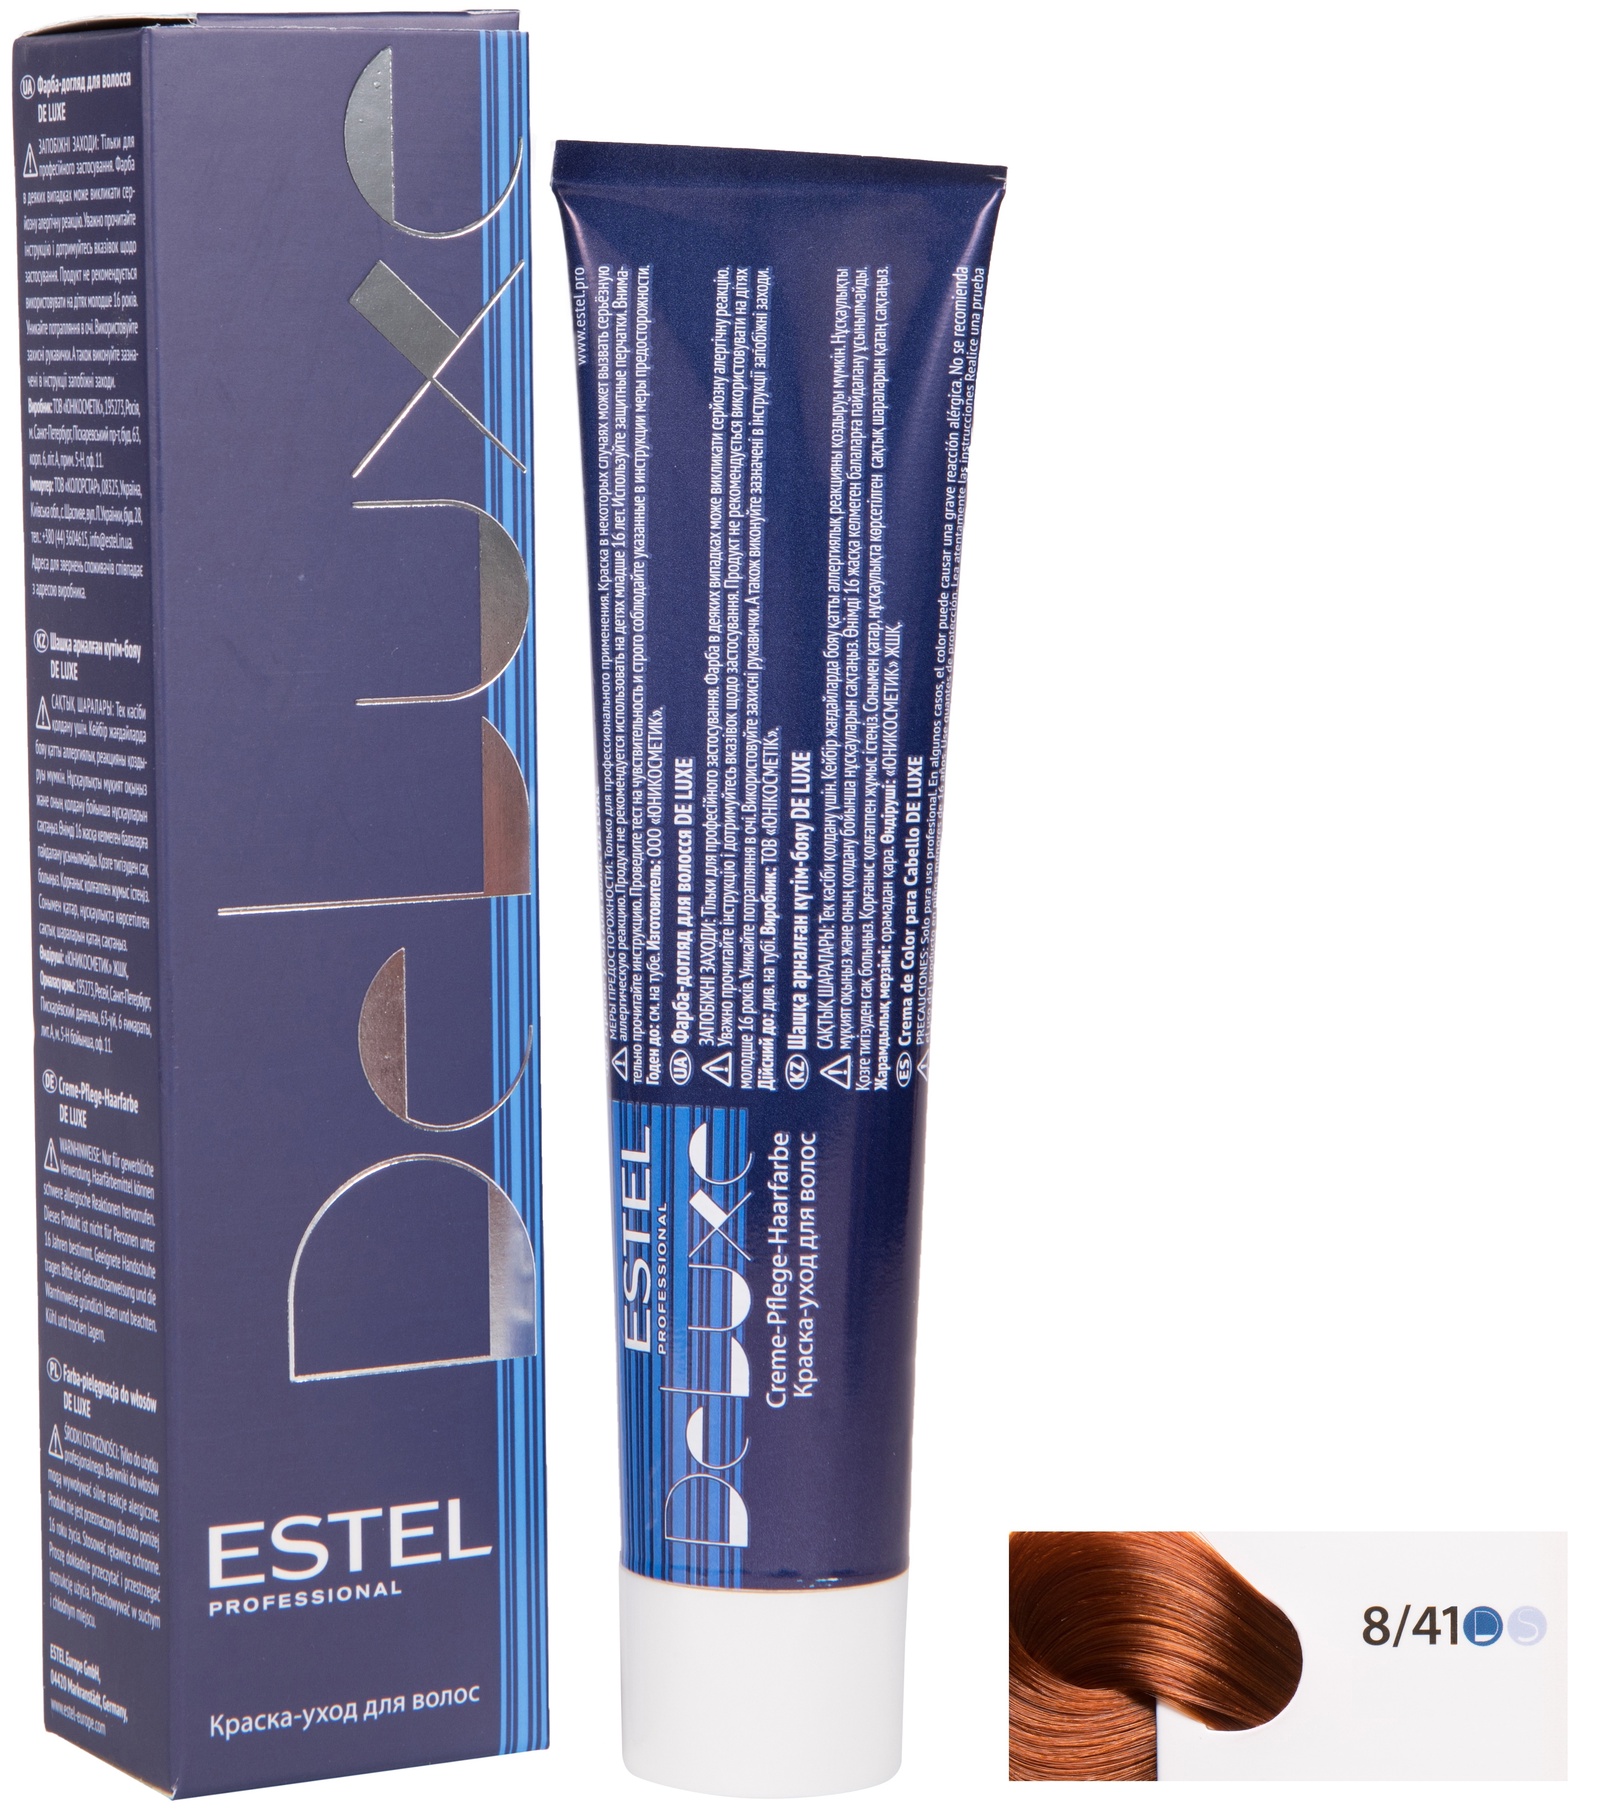 Краска для волос ESTEL PROFESSIONAL 8/41 DE LUXE краска-уход для окрашивания волос, светло-русый медно-пепельный 60 мл